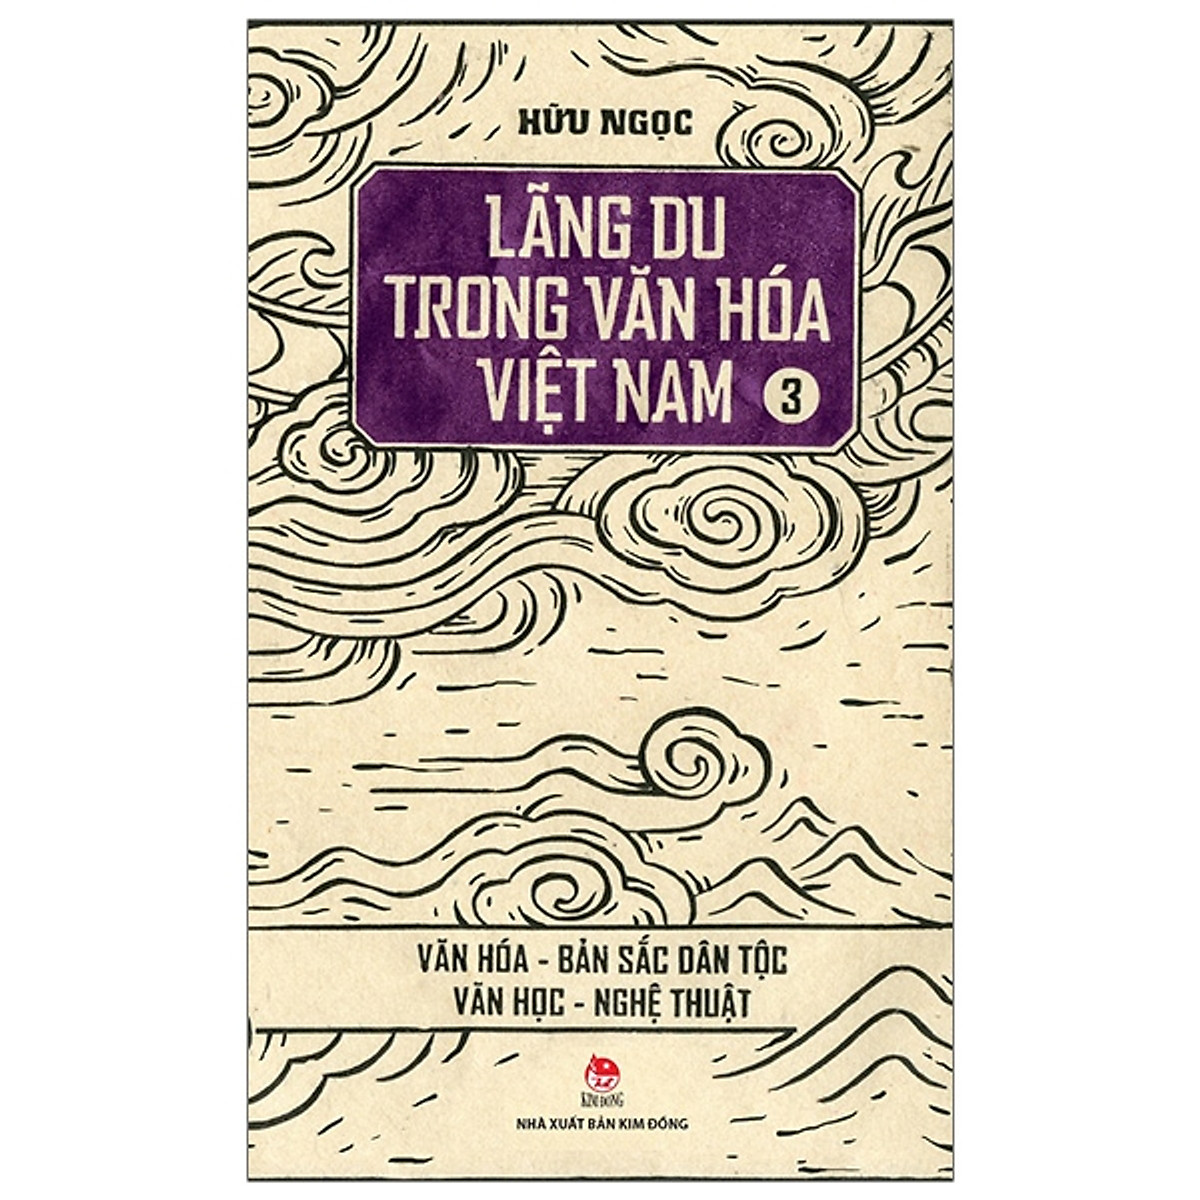 Lãng Du Trong Văn Hóa Việt Nam - 3 - Văn Hóa - Bản Sắc Dân Tộc - Văn Học - Nghệ Thuật (Tái Bản 2019)